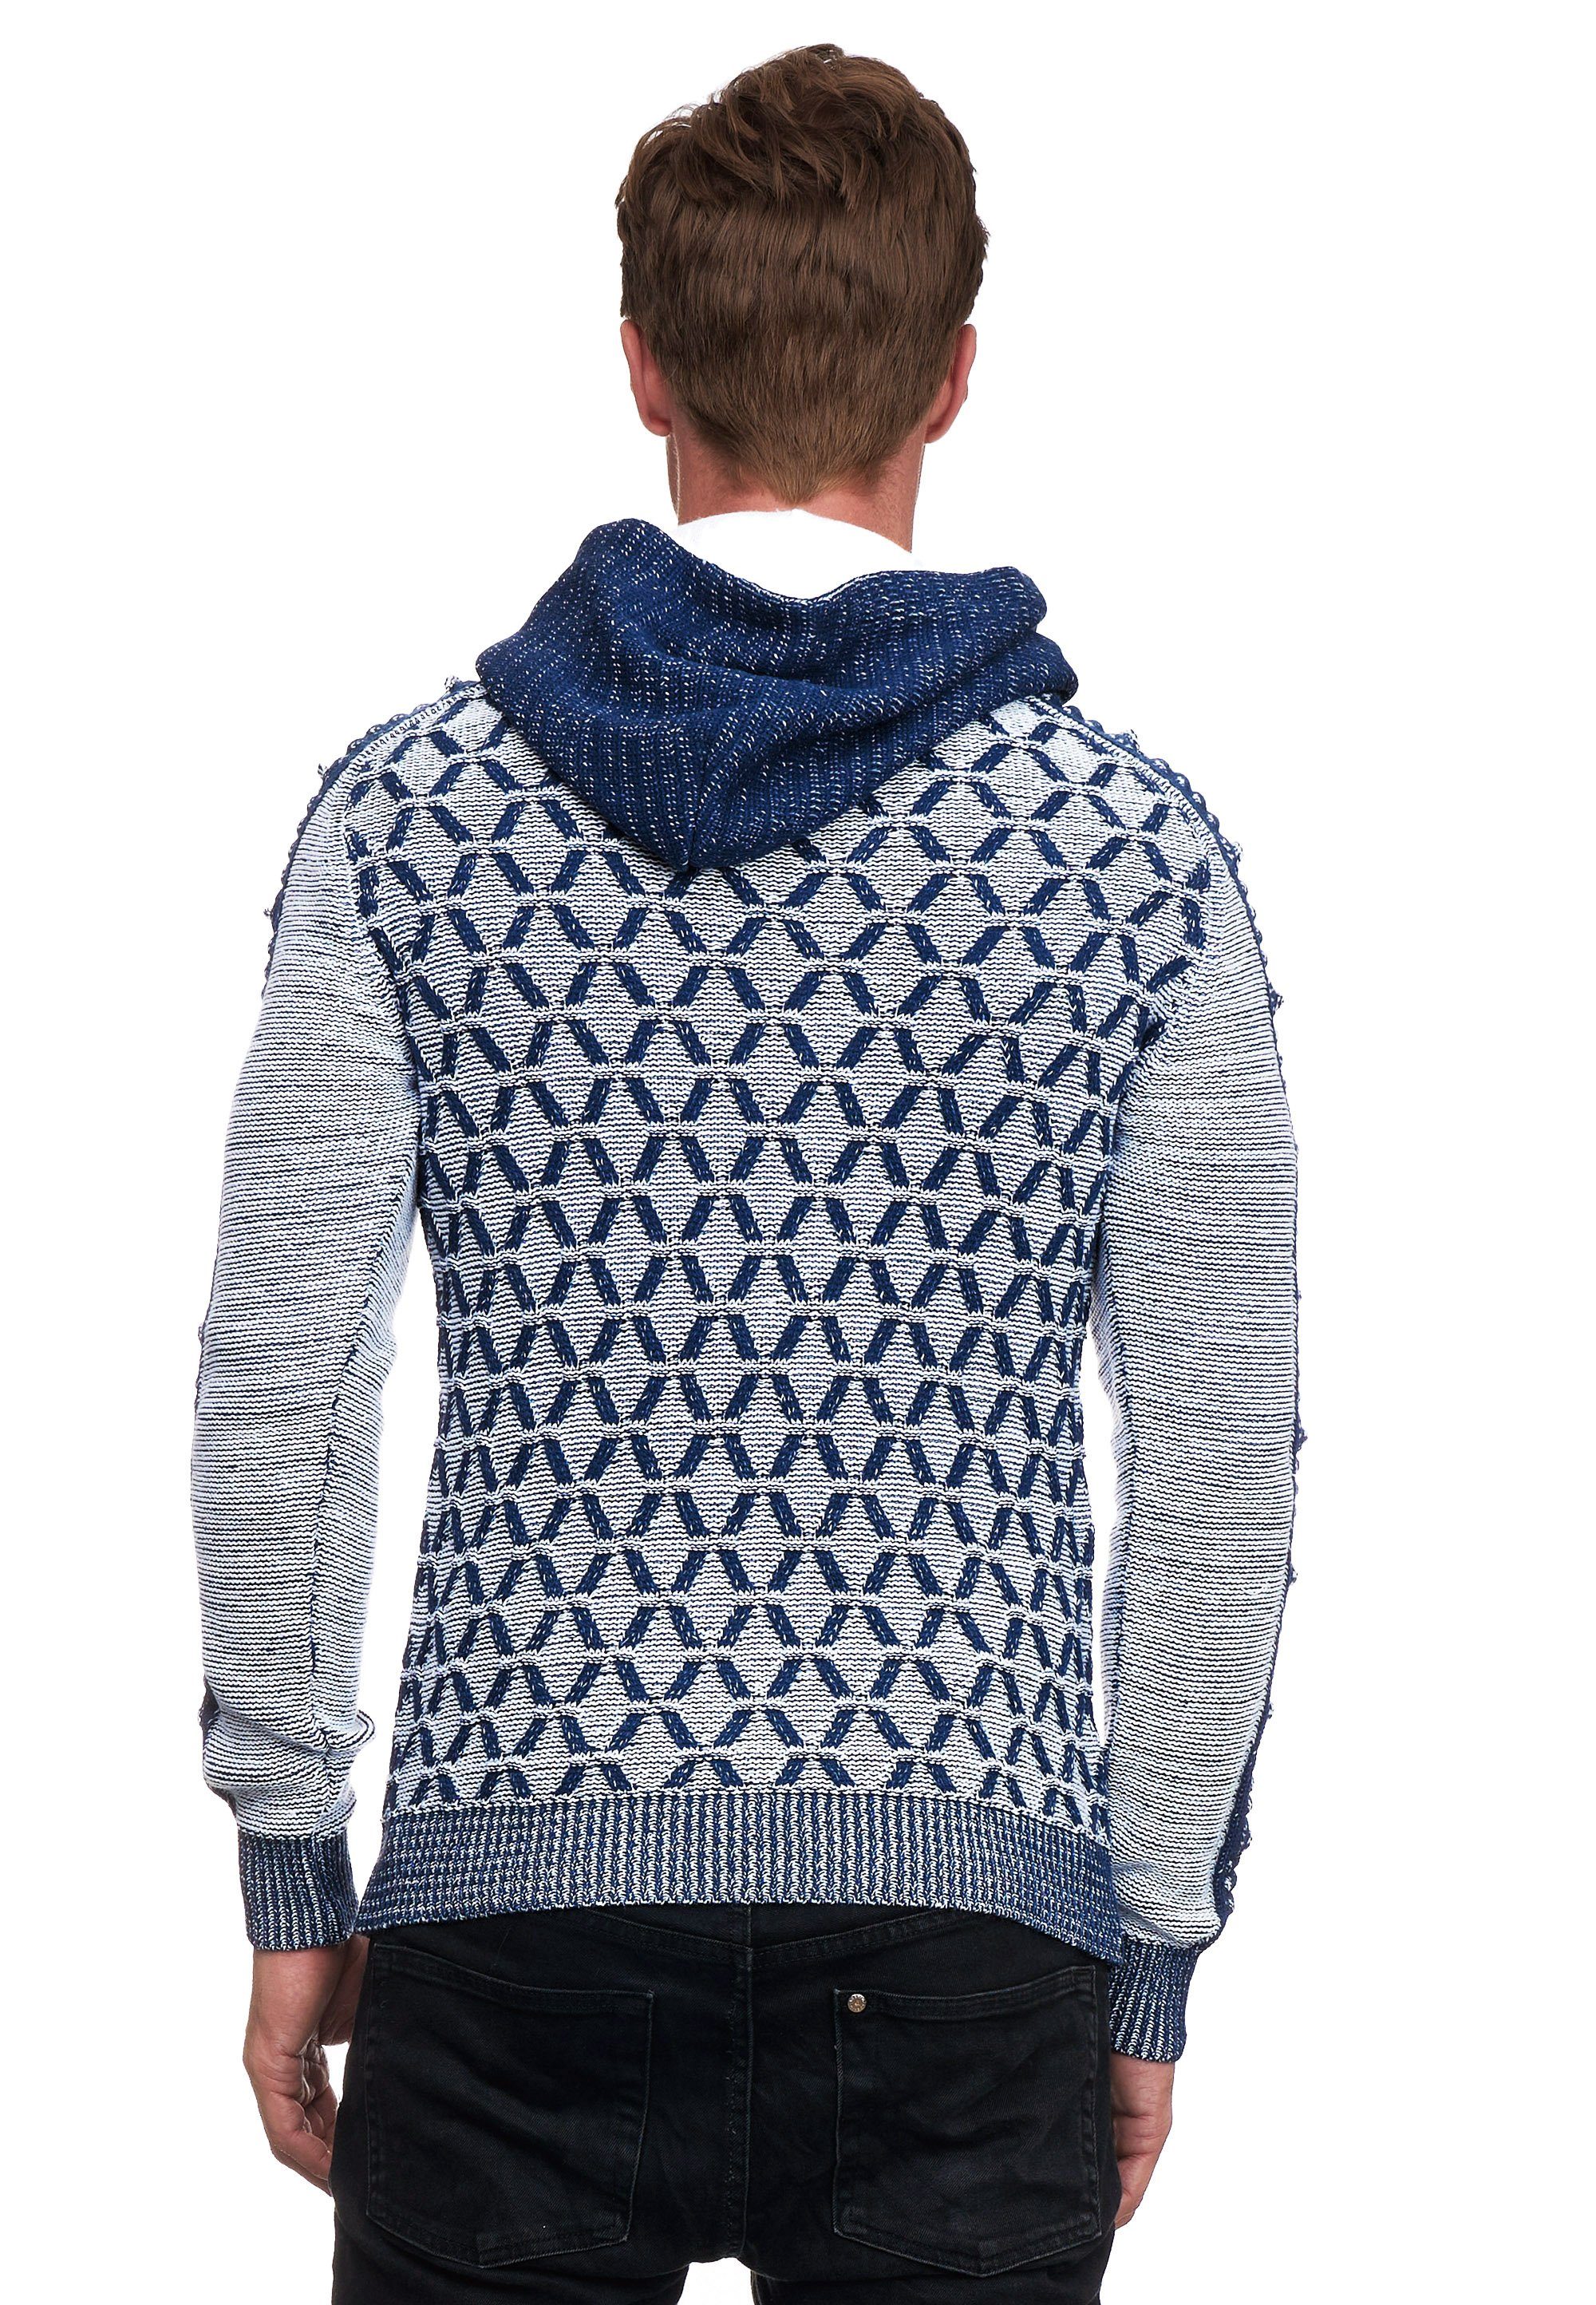 Rusty Neal Kapuzensweatshirt in blau-weiß ausgefallenem Design